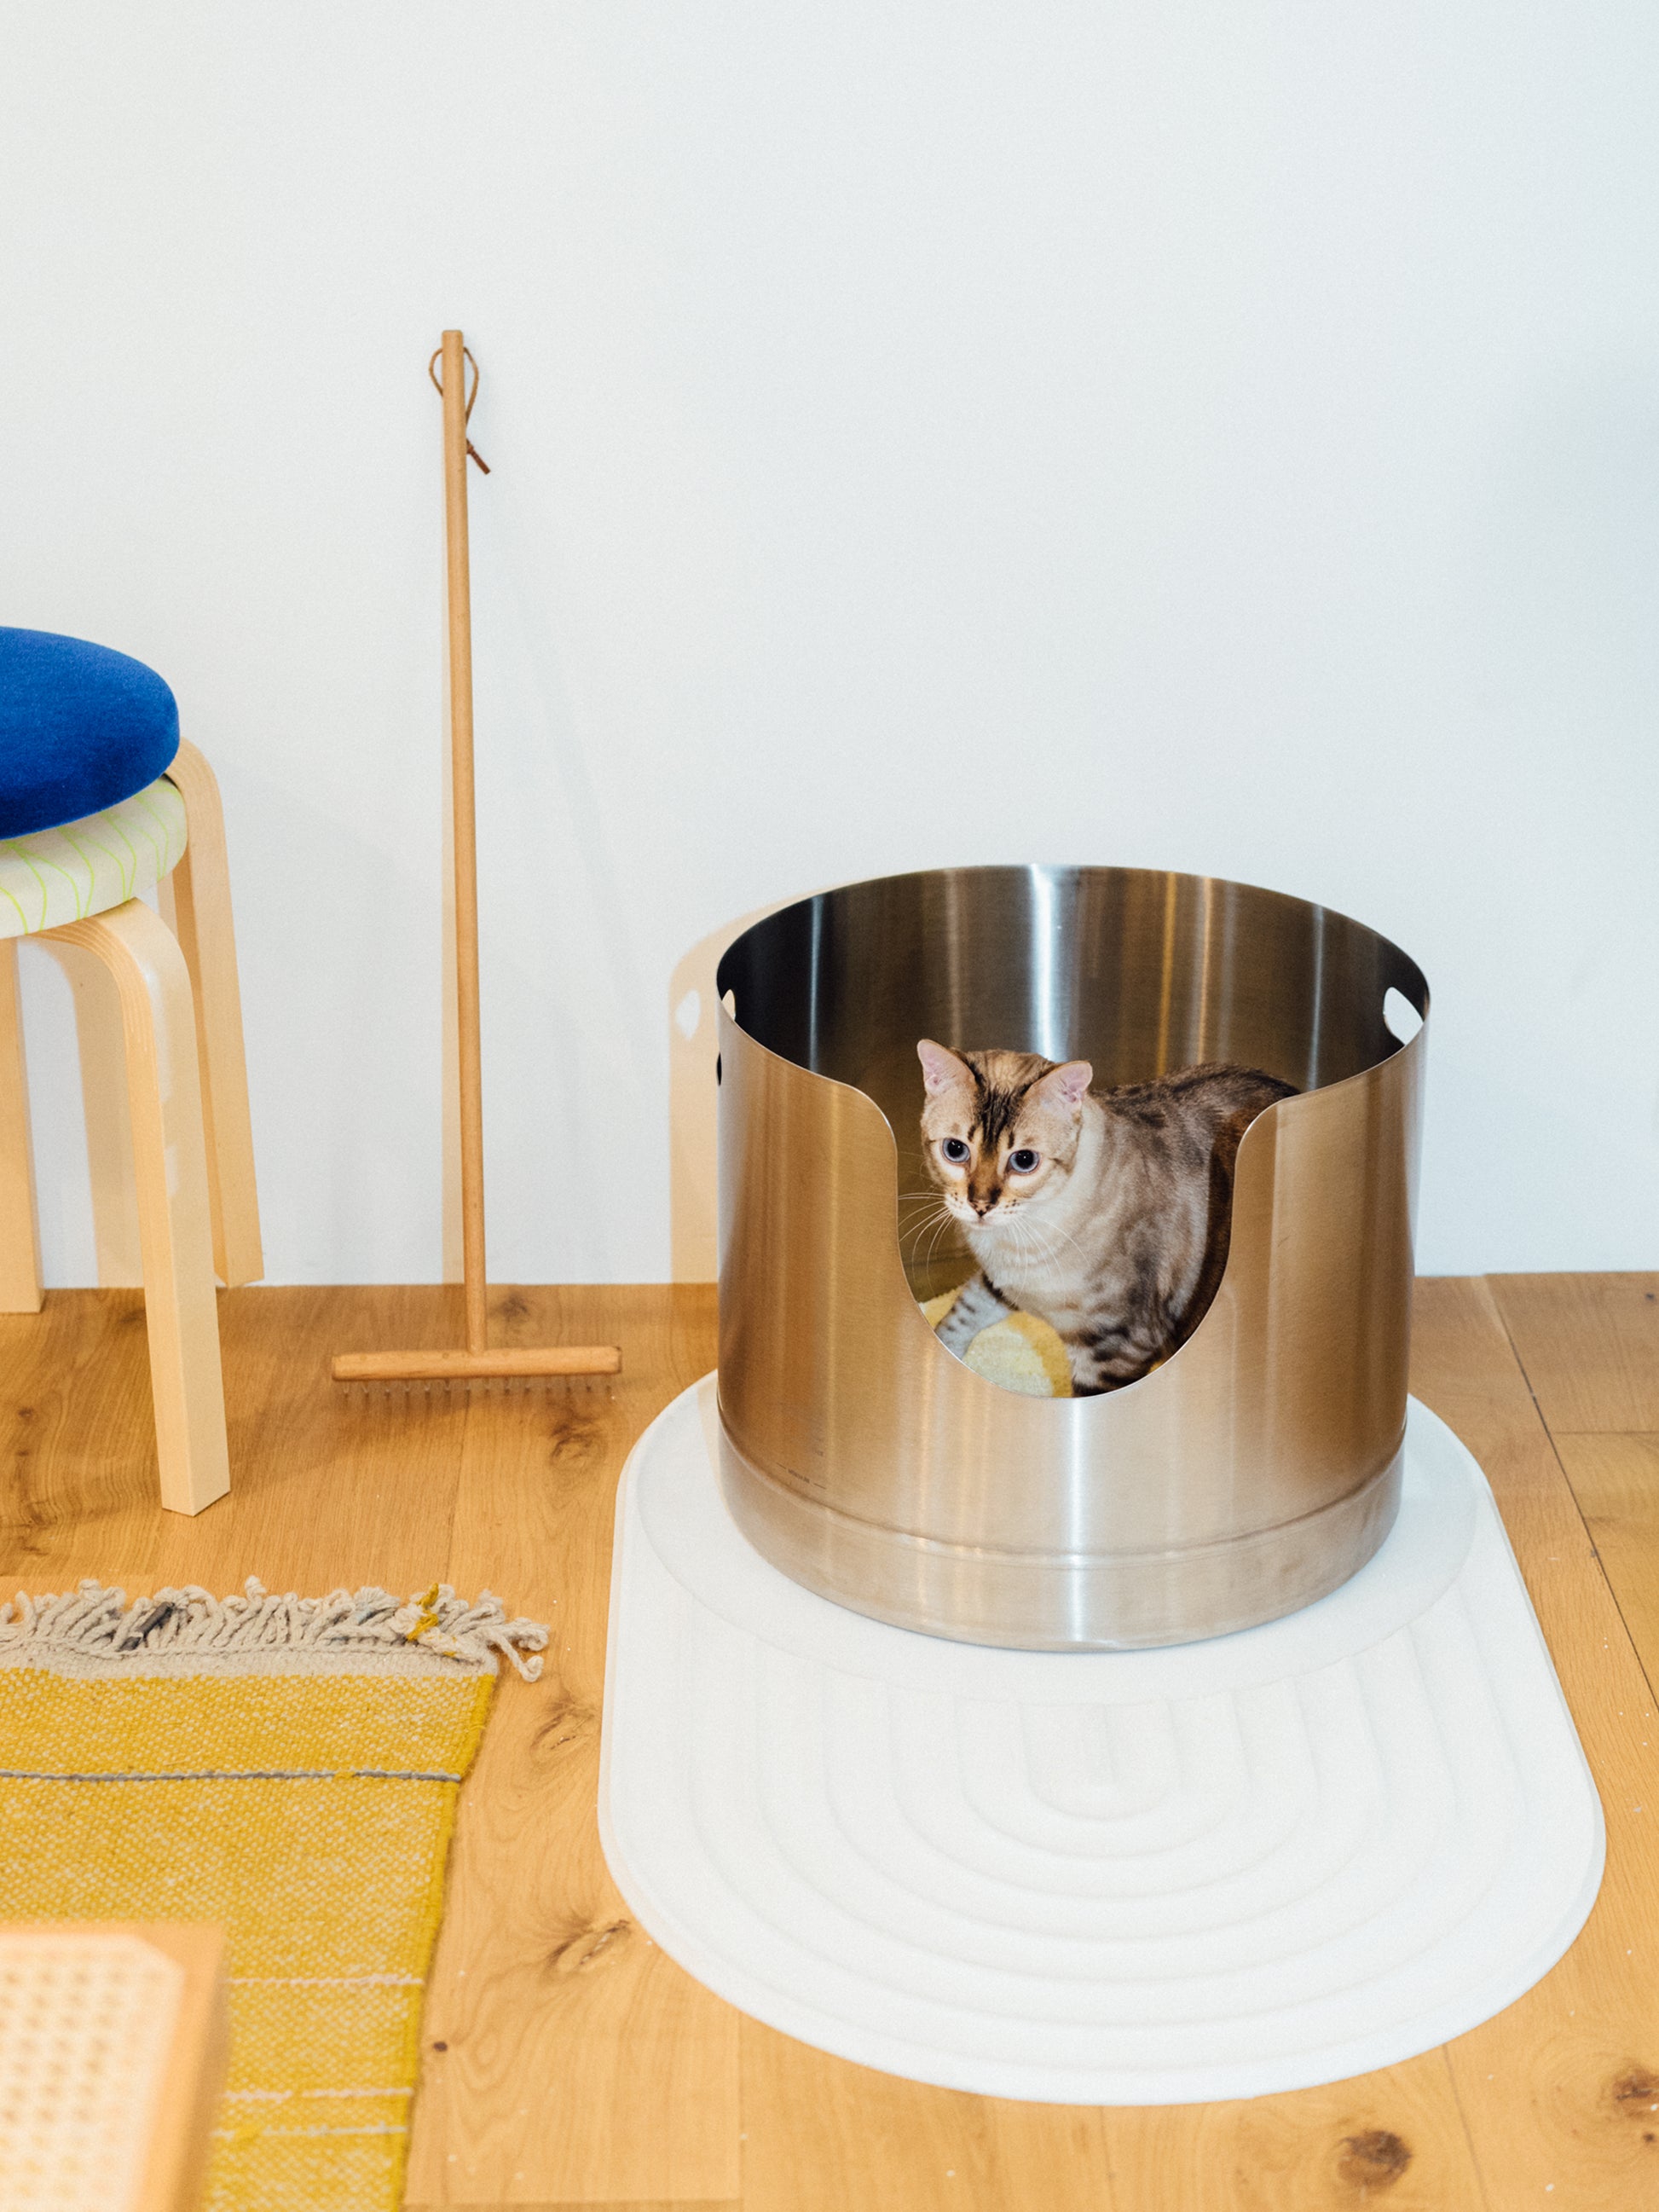 Silicone Cat Litter Trap Mat & Feeding Mat